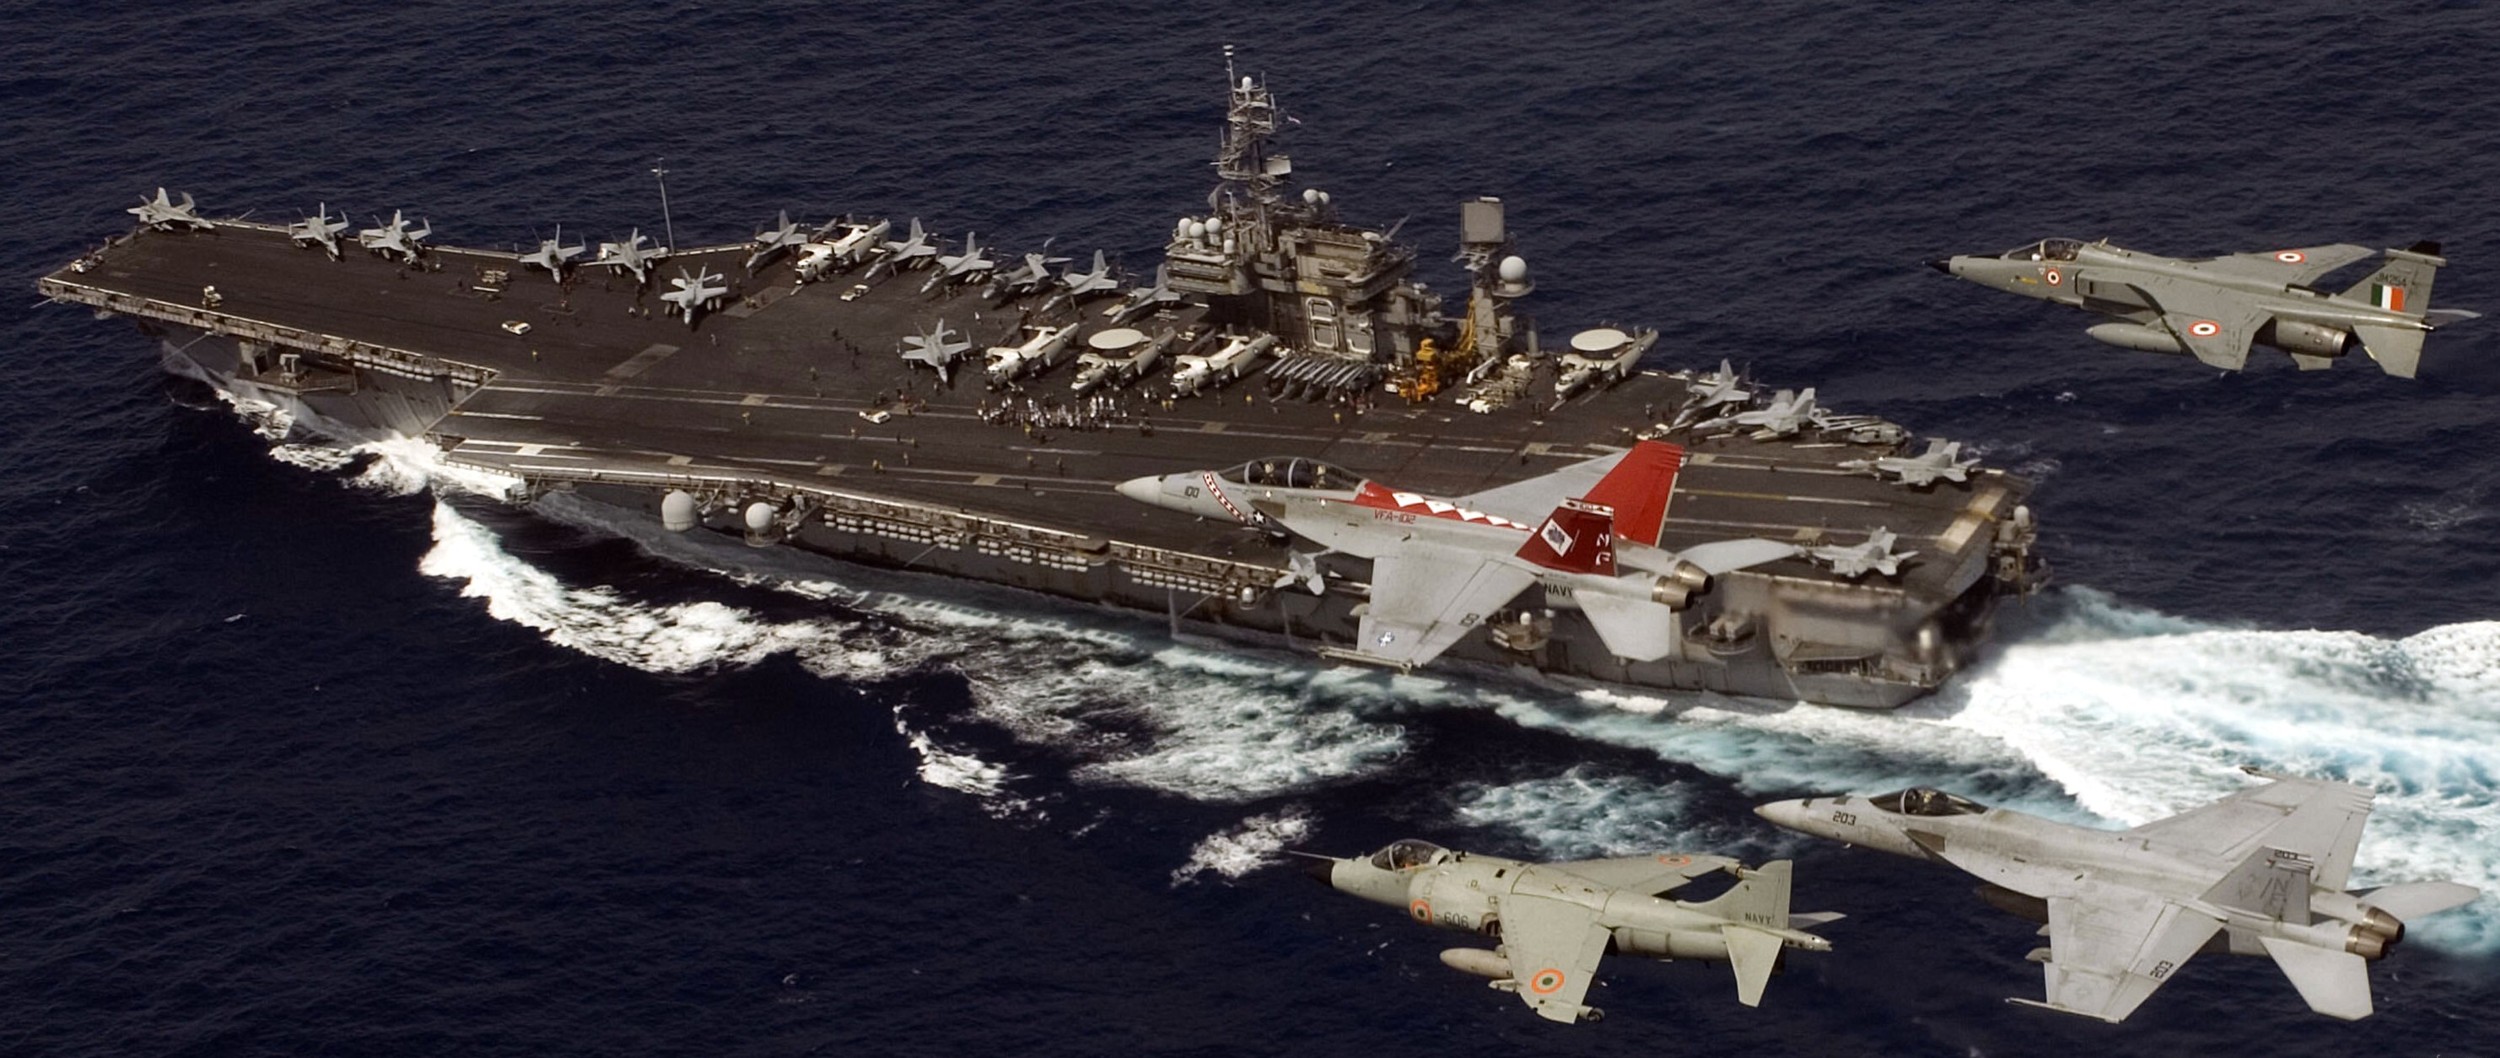 cv-63 uss kitty hawk aircraft carrier air wing cvw-5 us navy 93 indian air force navy sepecat jaguar harrier